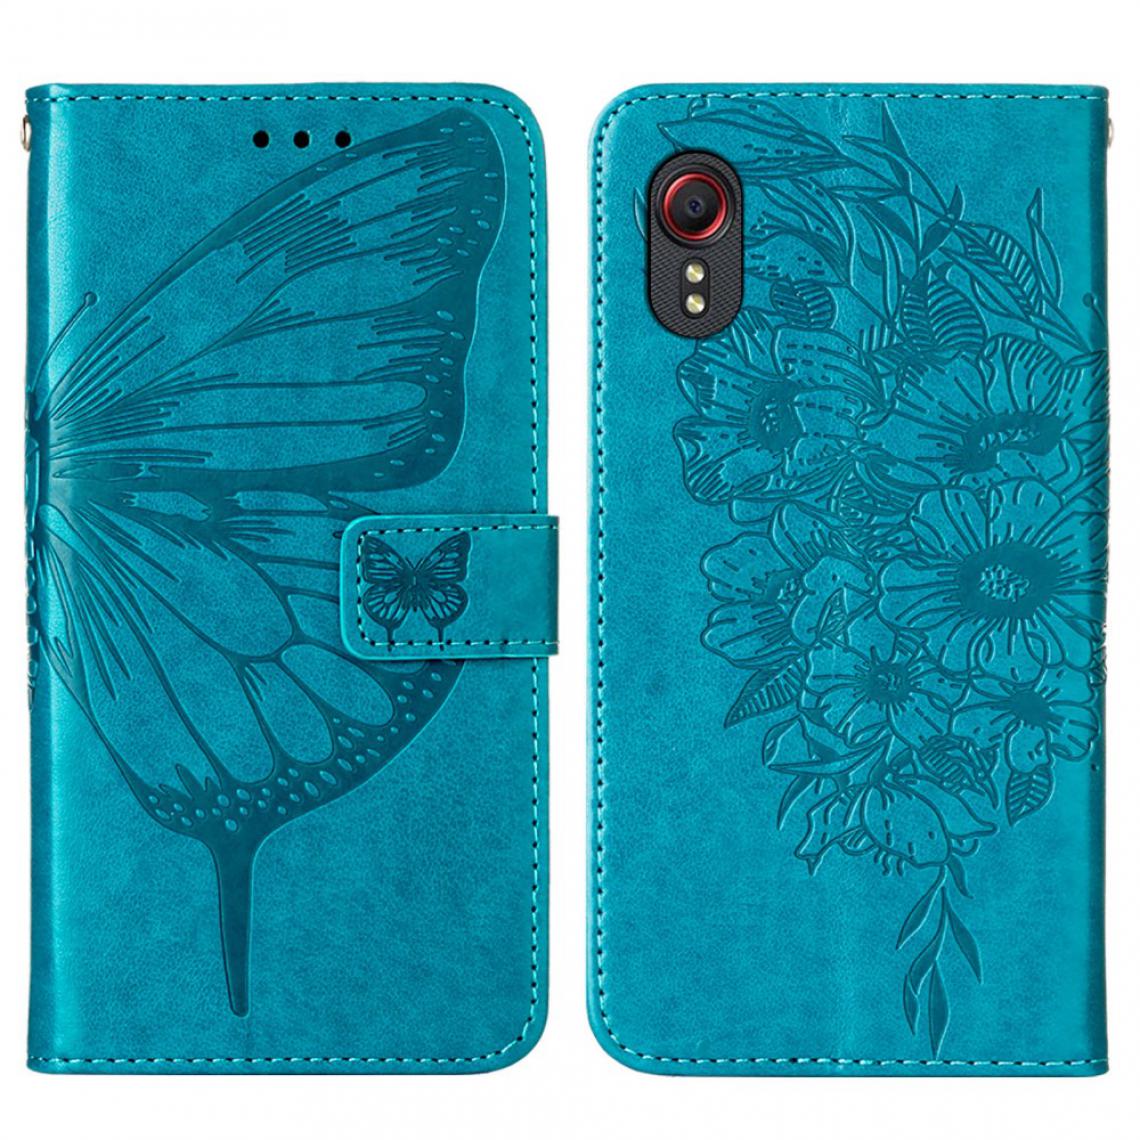 Other - Etui en PU Empreinte Papillons Fleur avec support bleu pour votre Samsung Galaxy Xcover 5 - Coque, étui smartphone